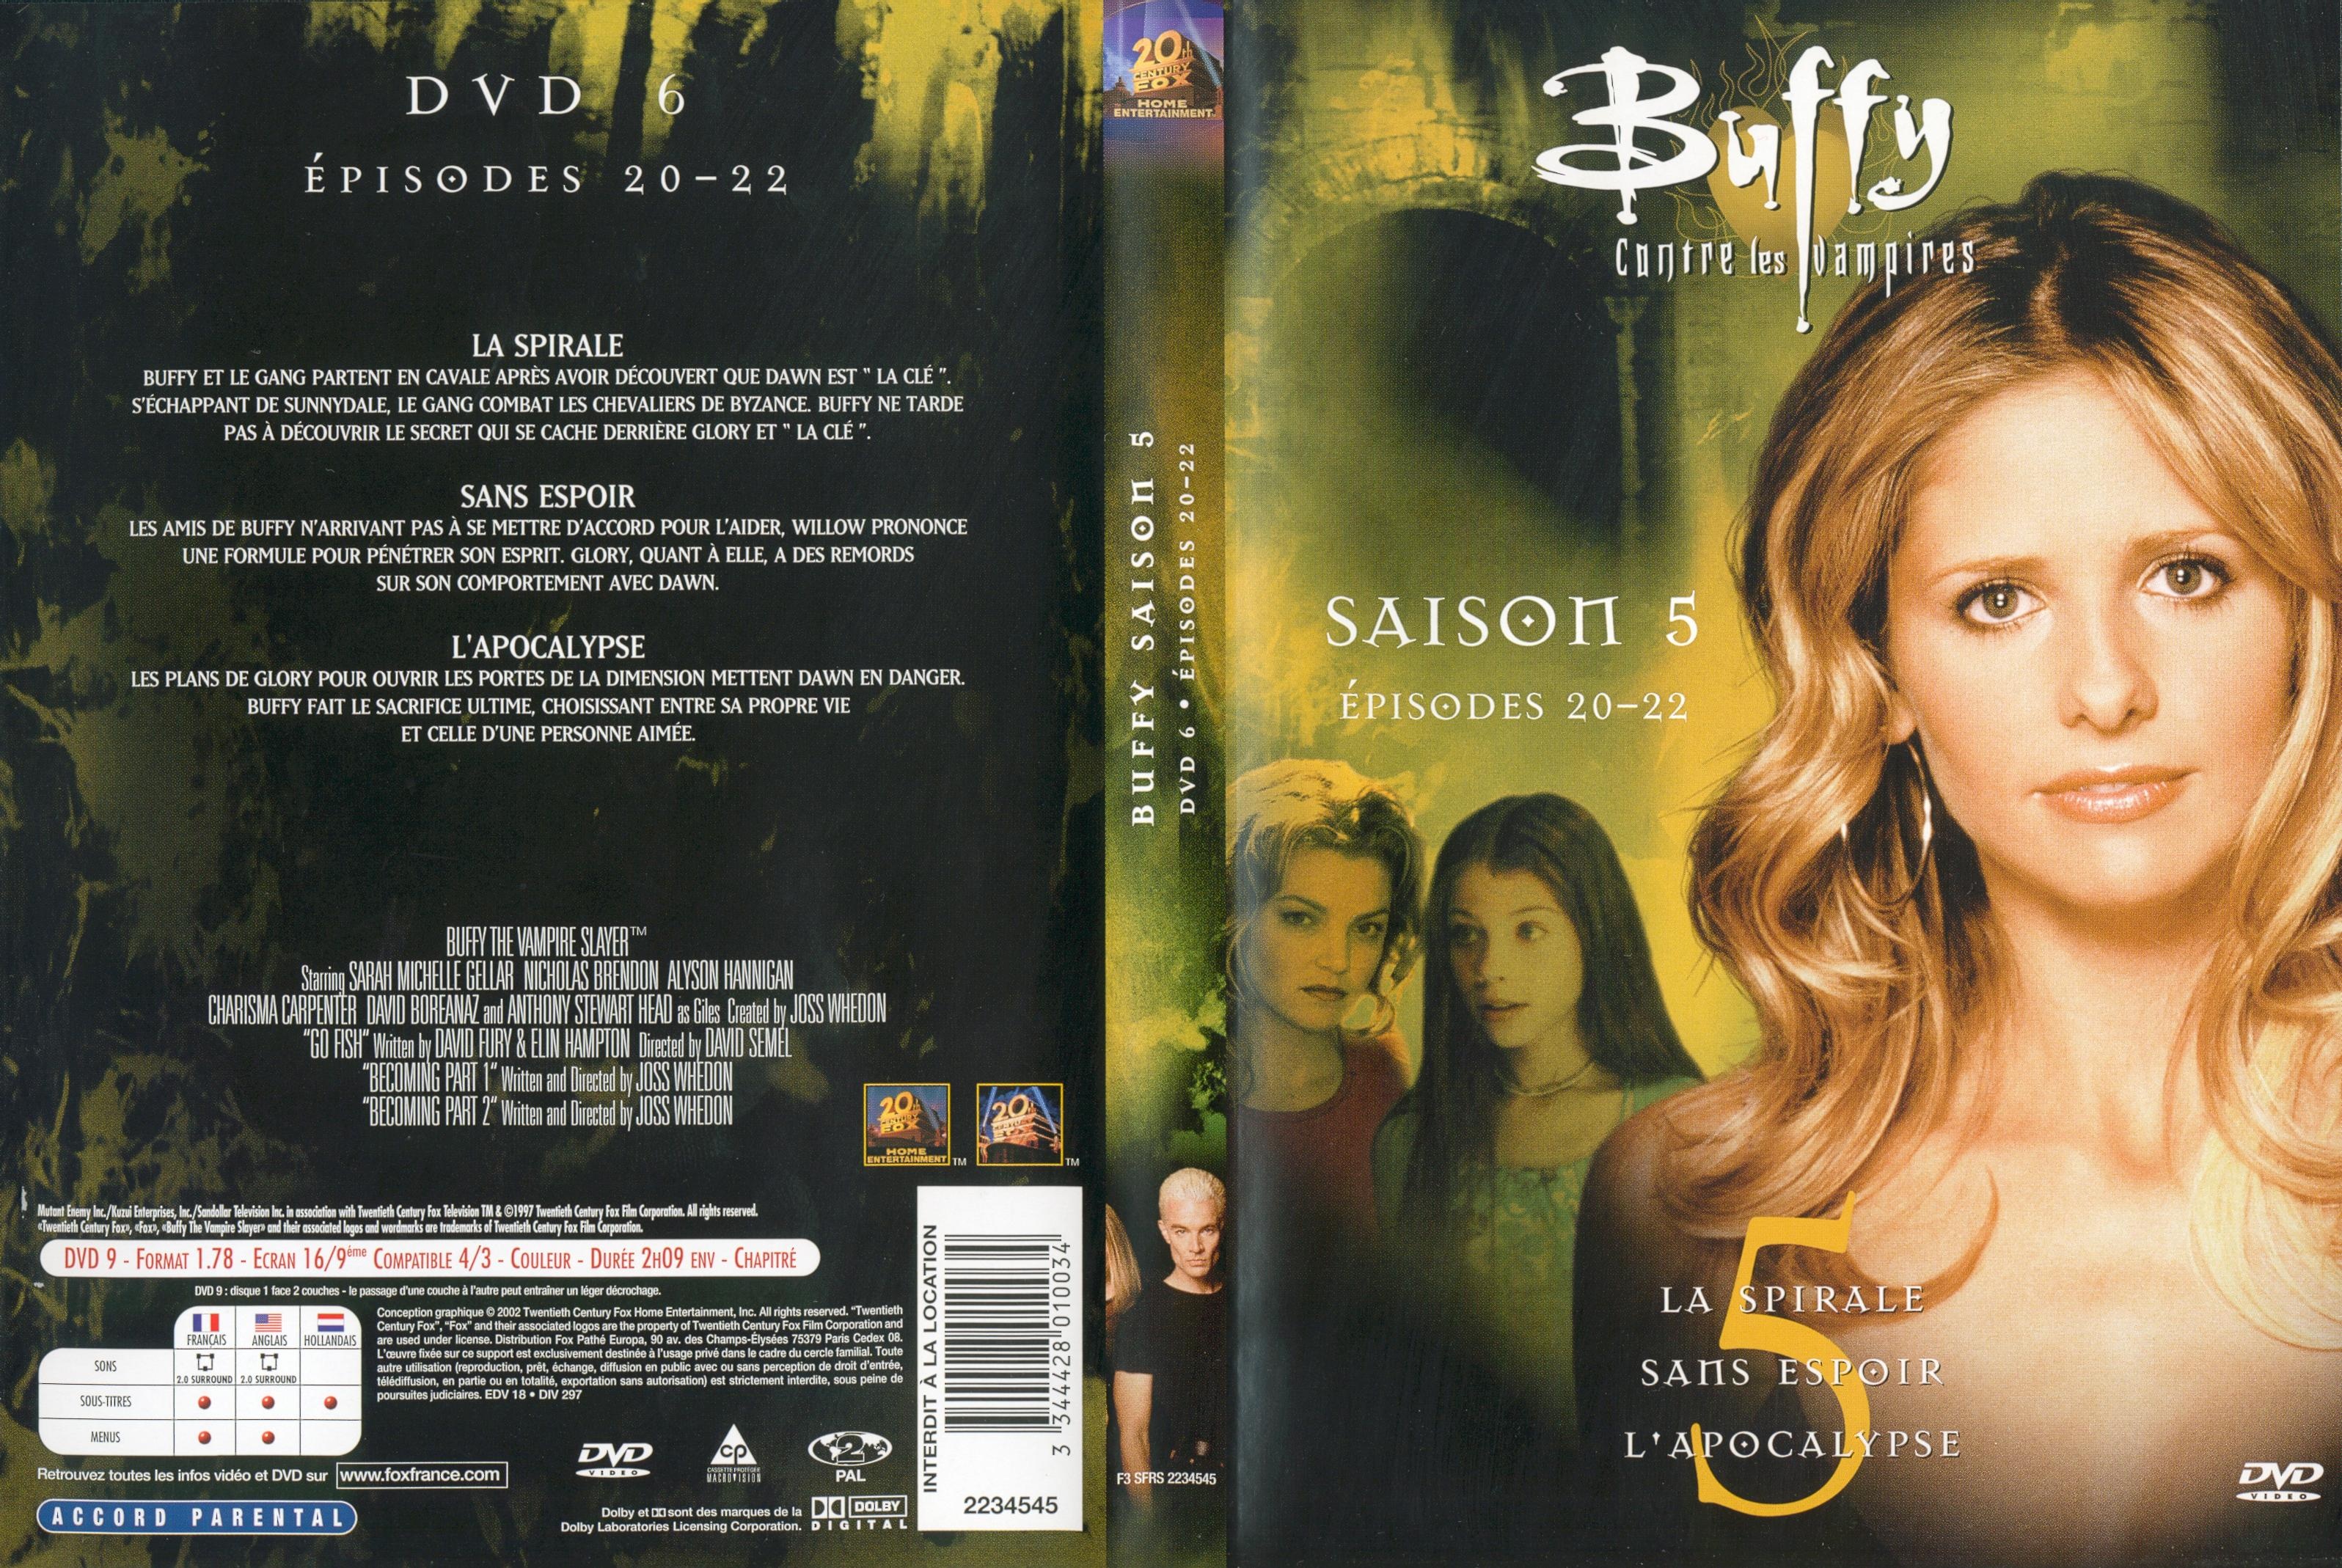 Jaquette DVD Buffy contre les vampires Saison 5 DVD 6